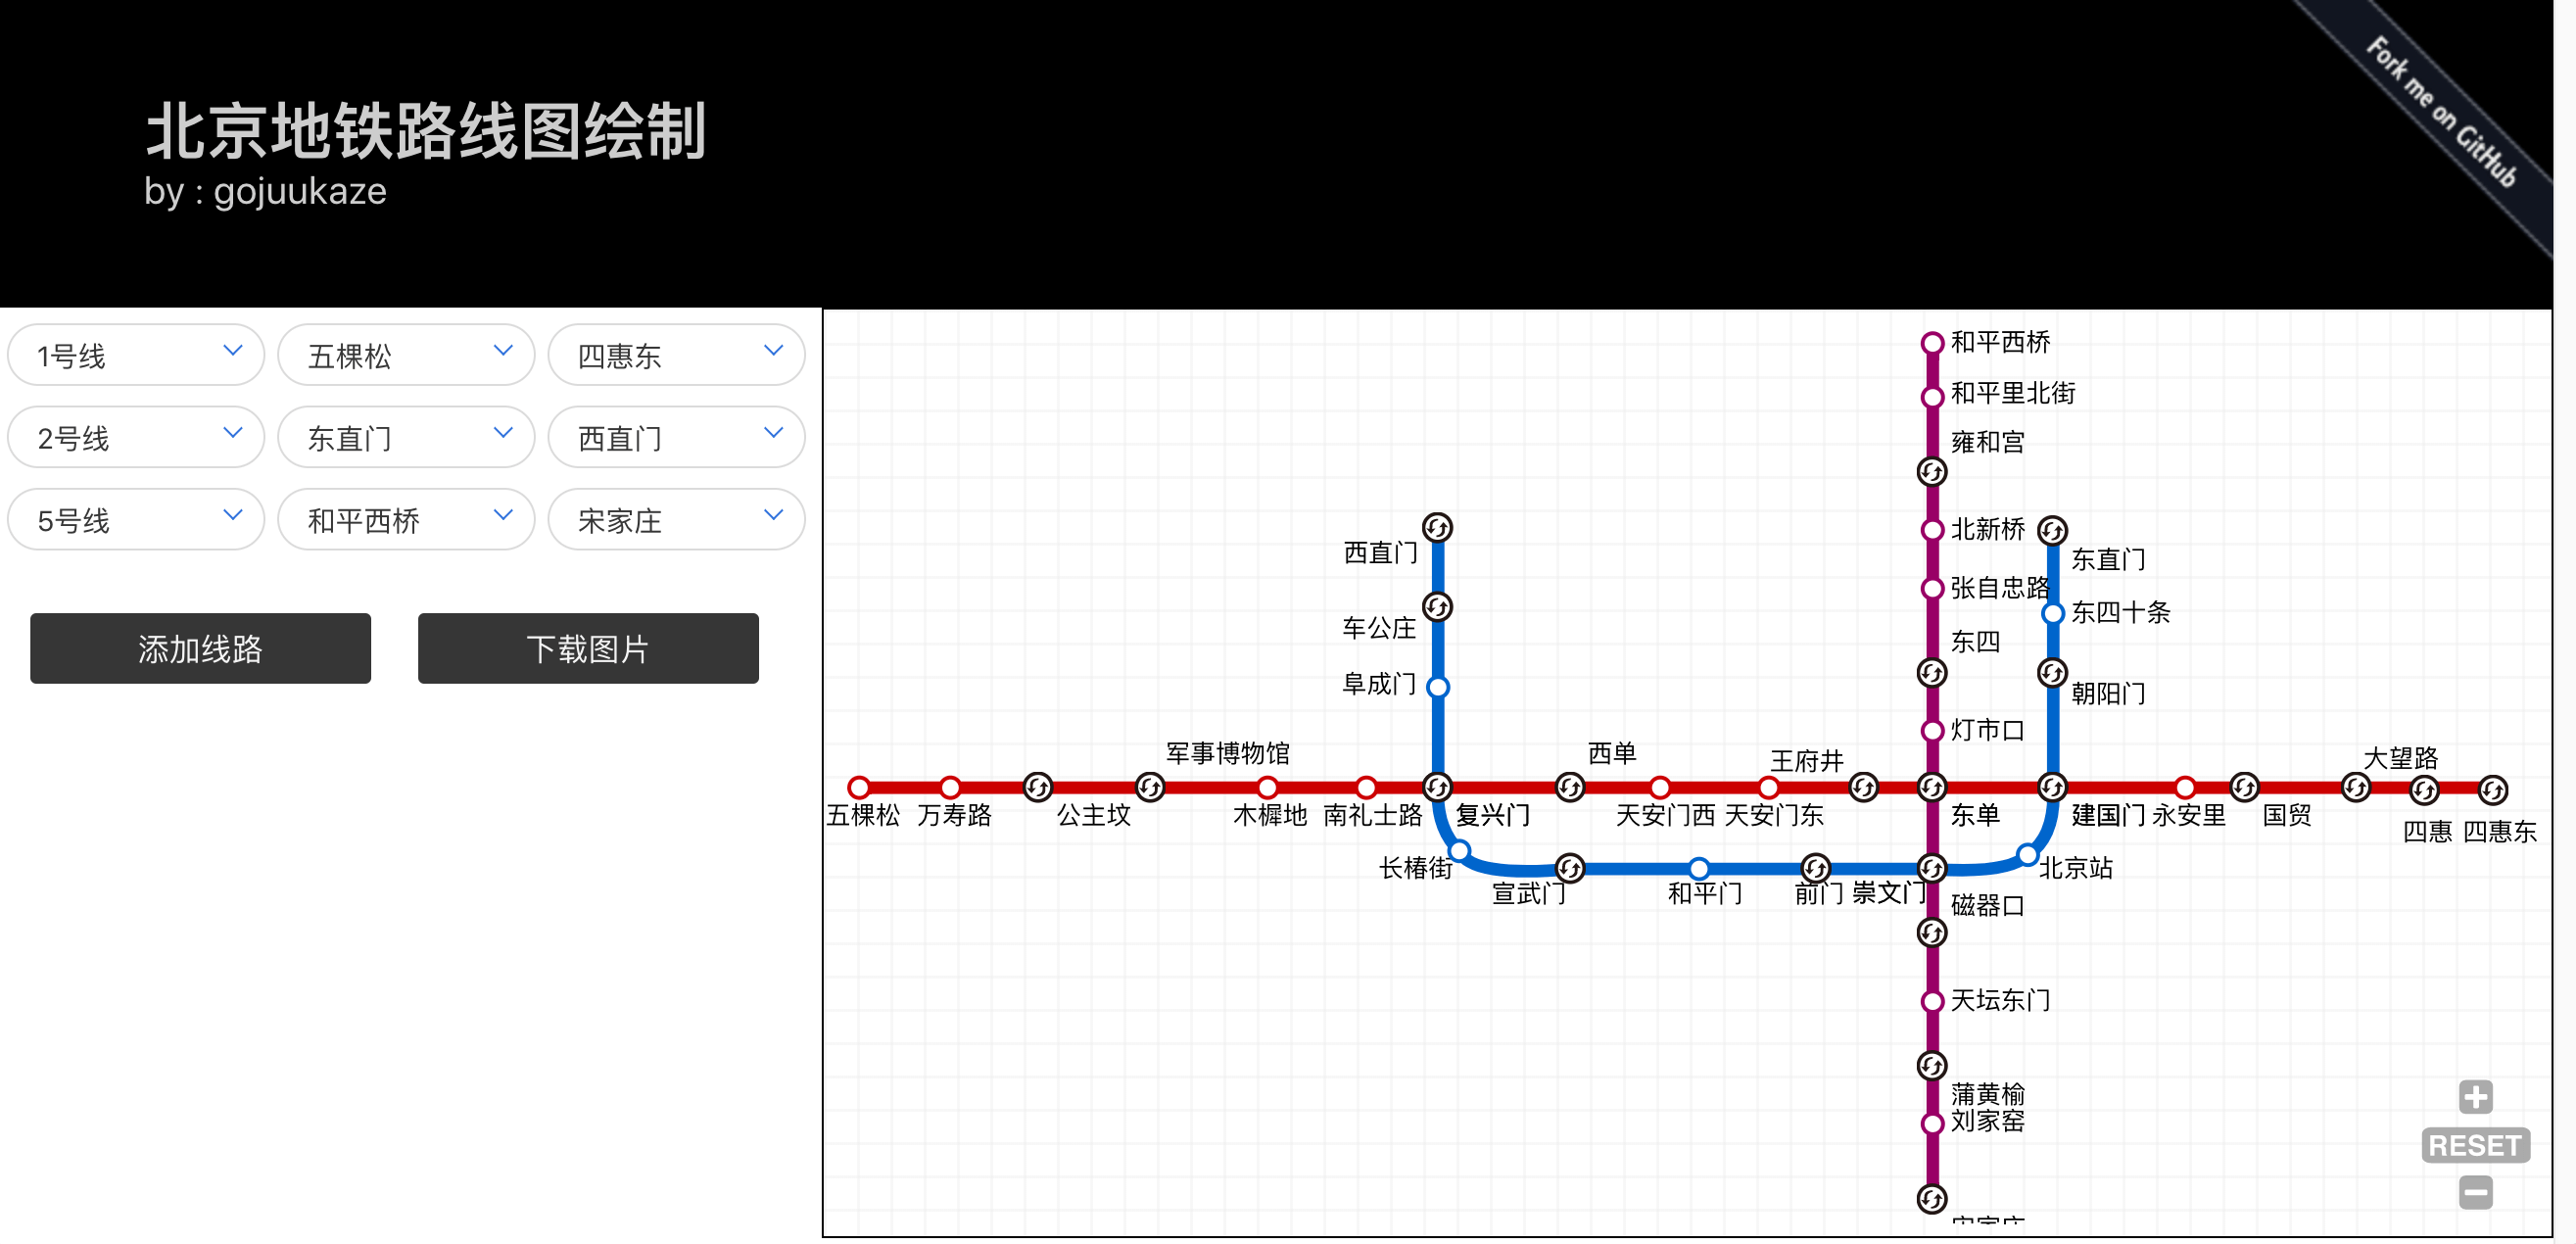 地铁线路图绘制软件图片